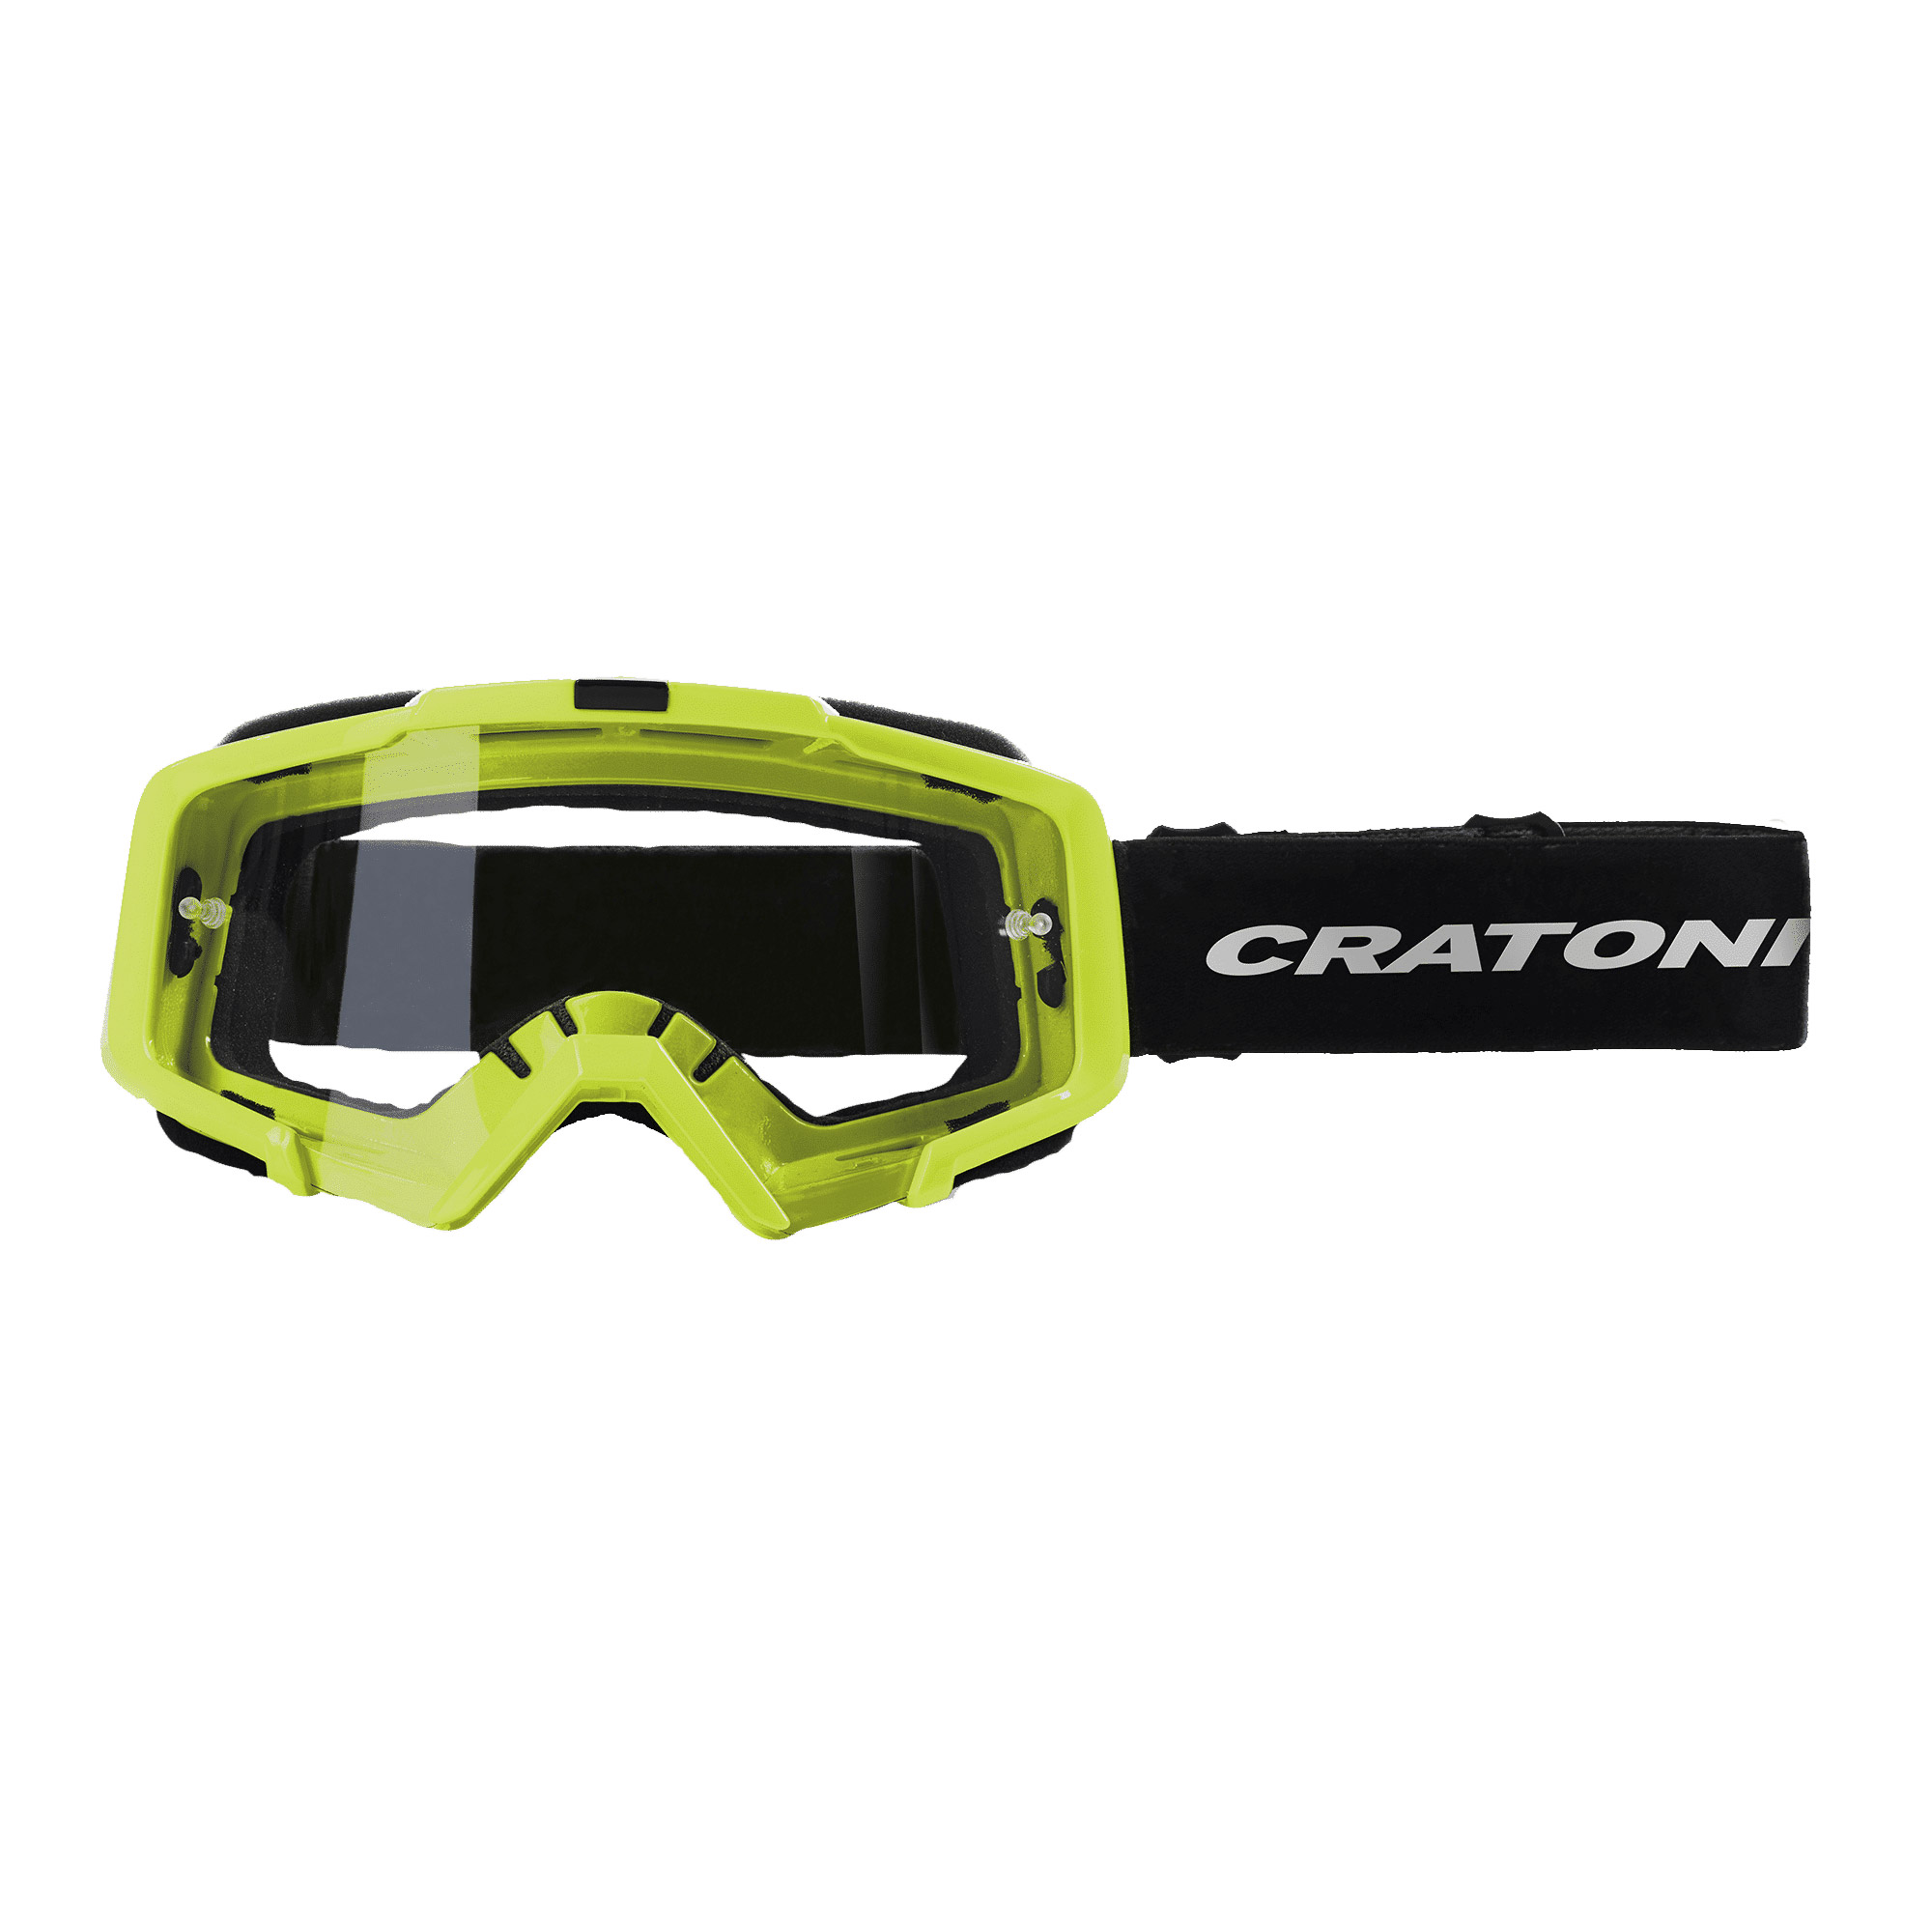 Cratoni C-Dirttrack Crossbrille MTB Goggle